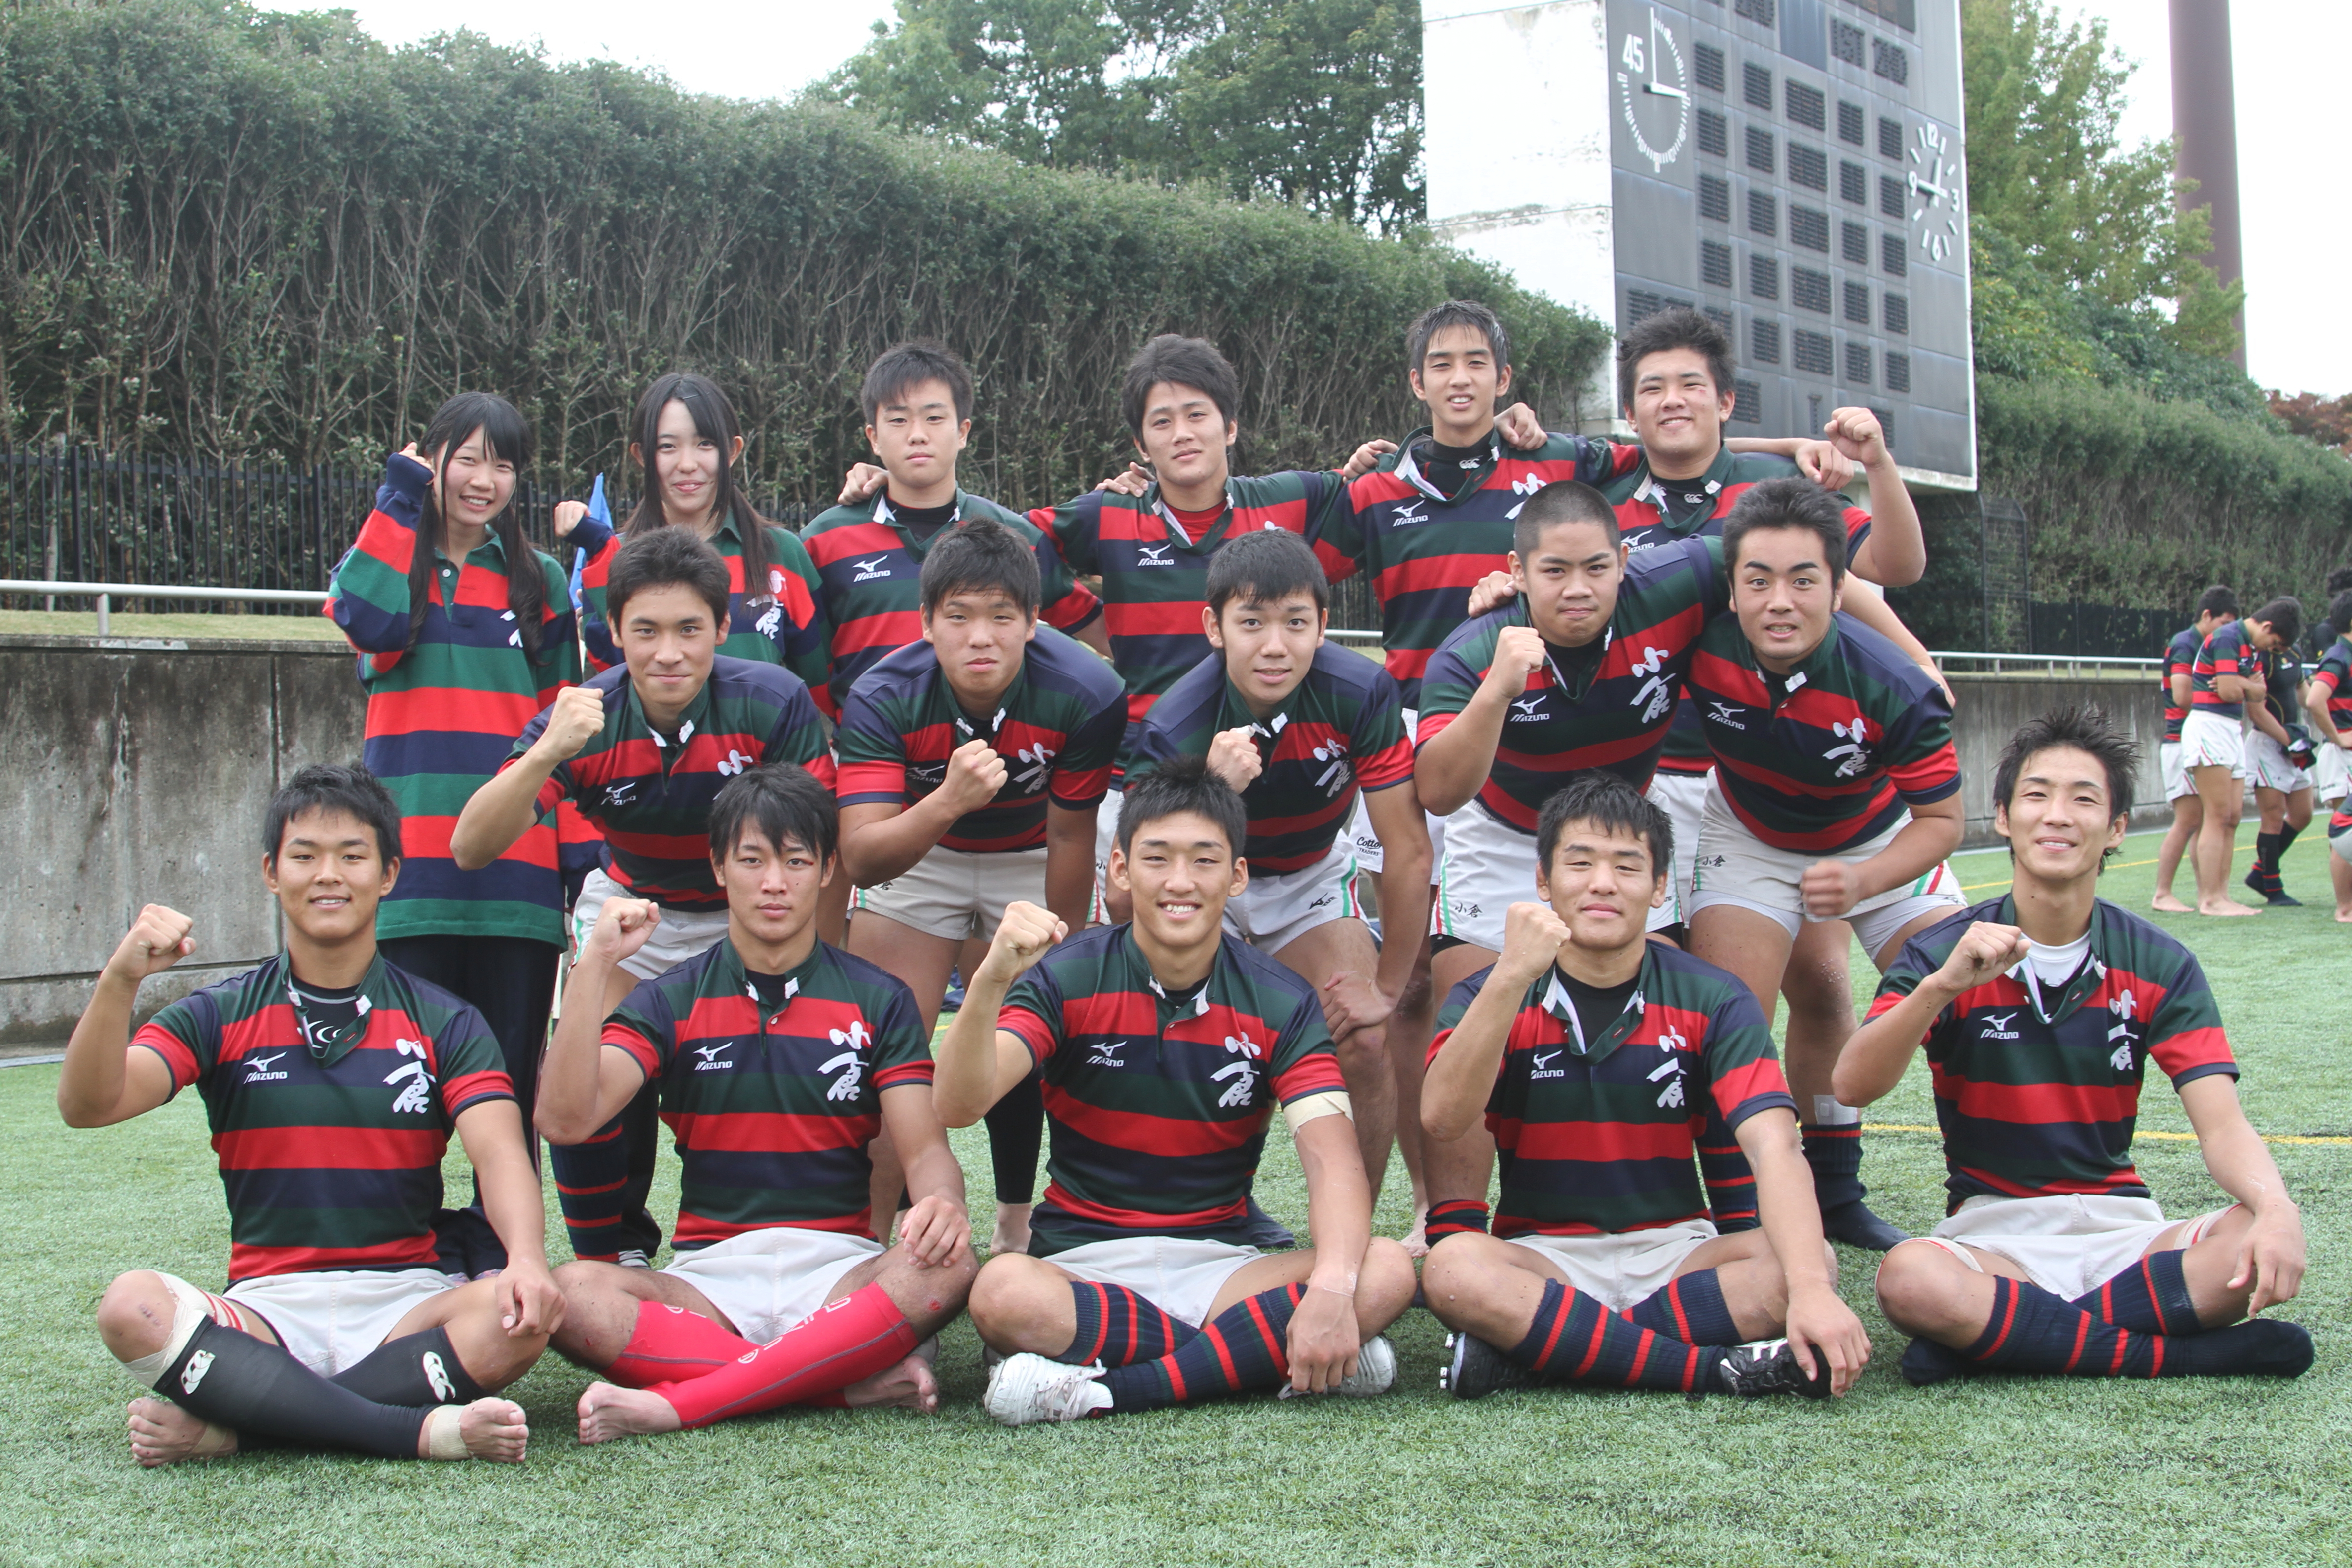 http://kokura-rugby.sakura.ne.jp/2011.11.6-4-21-A.JPG